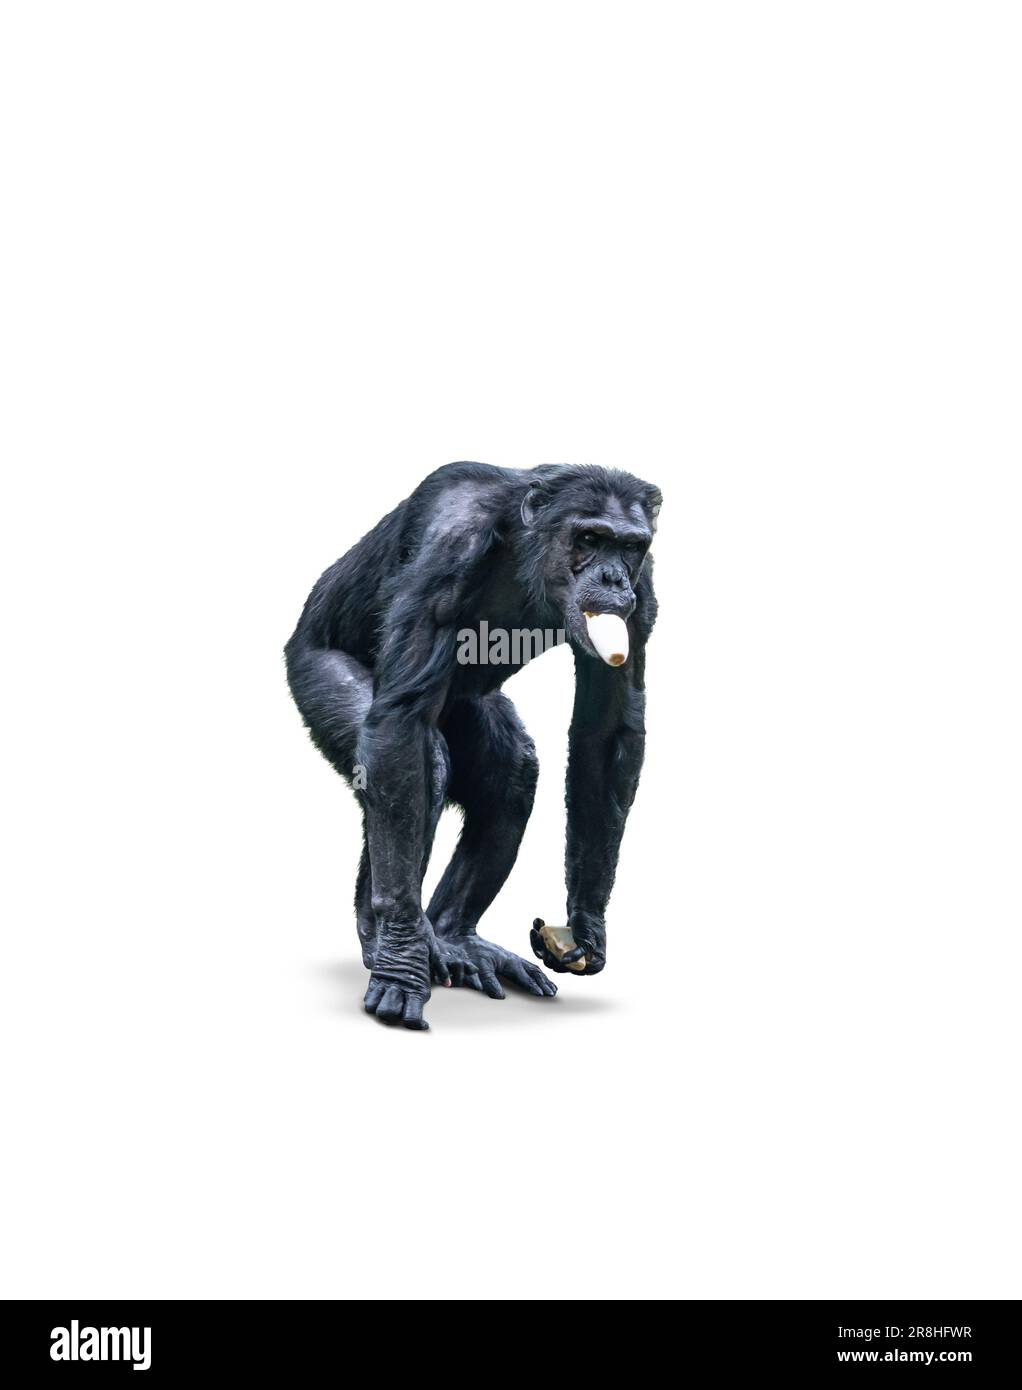 Chimpanzee monkey eating vegetables, isolated on white background. Stock Photo